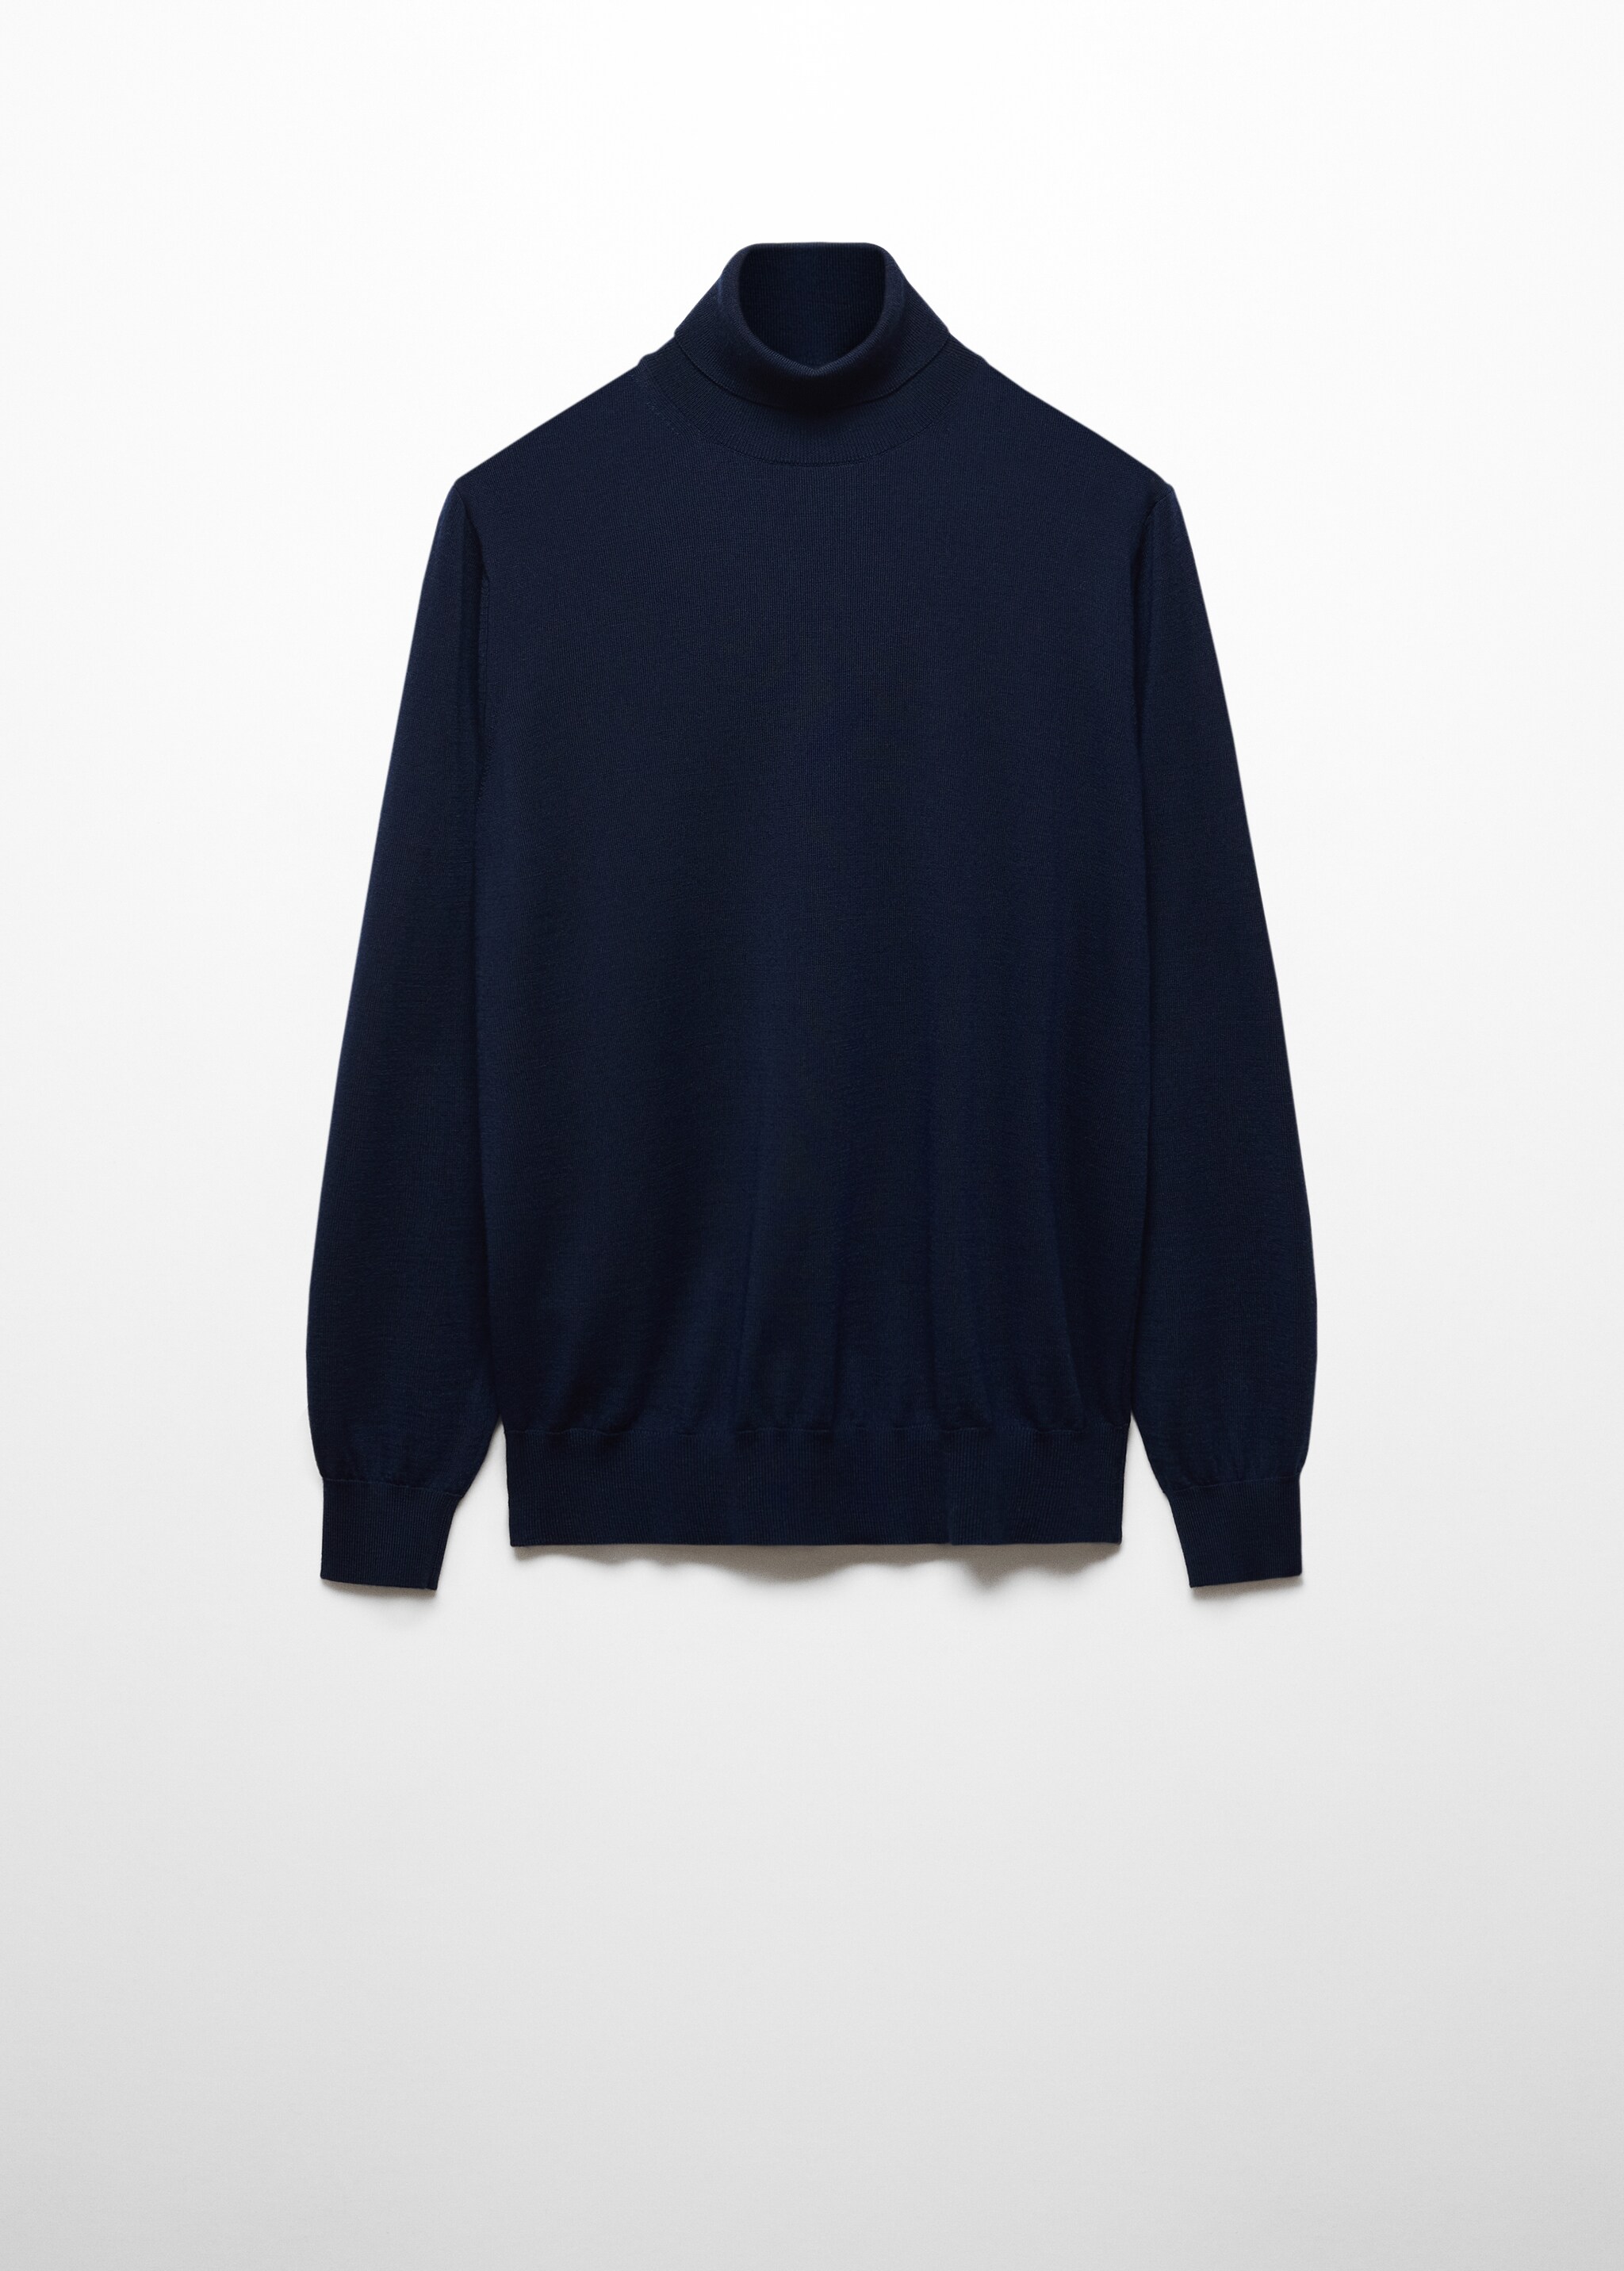 Jersey 100% lana merino cuello alto - Artículo sin modelo